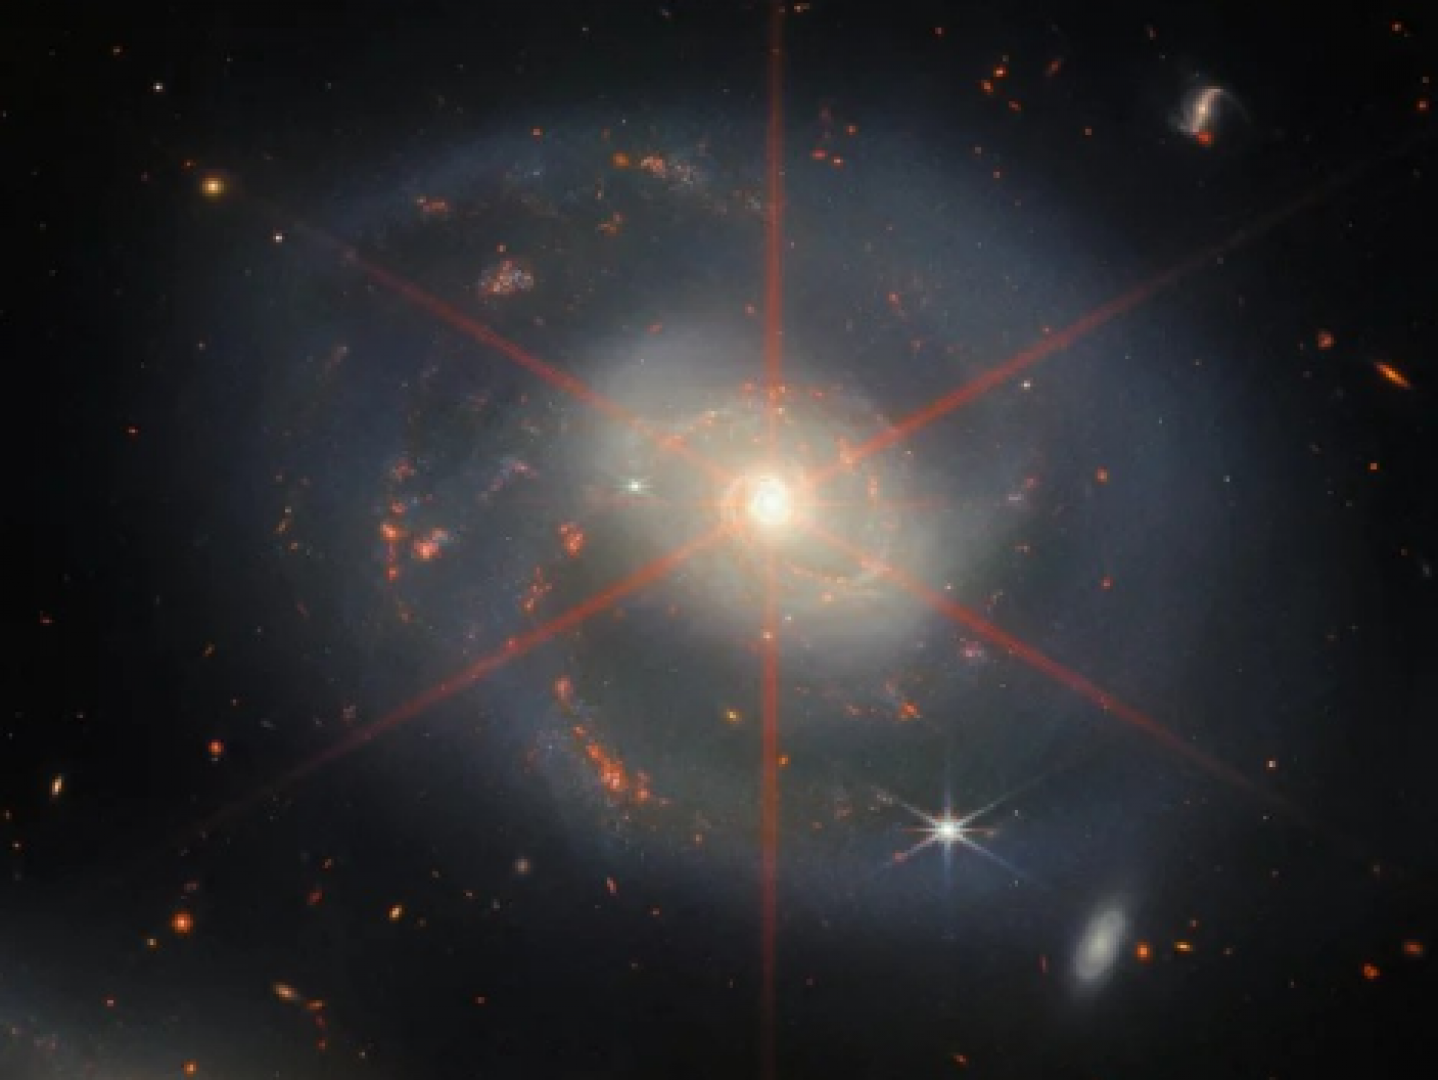 تلسكوب جيمس ويب يلتقط صورة مجرة ذات قلب لامع